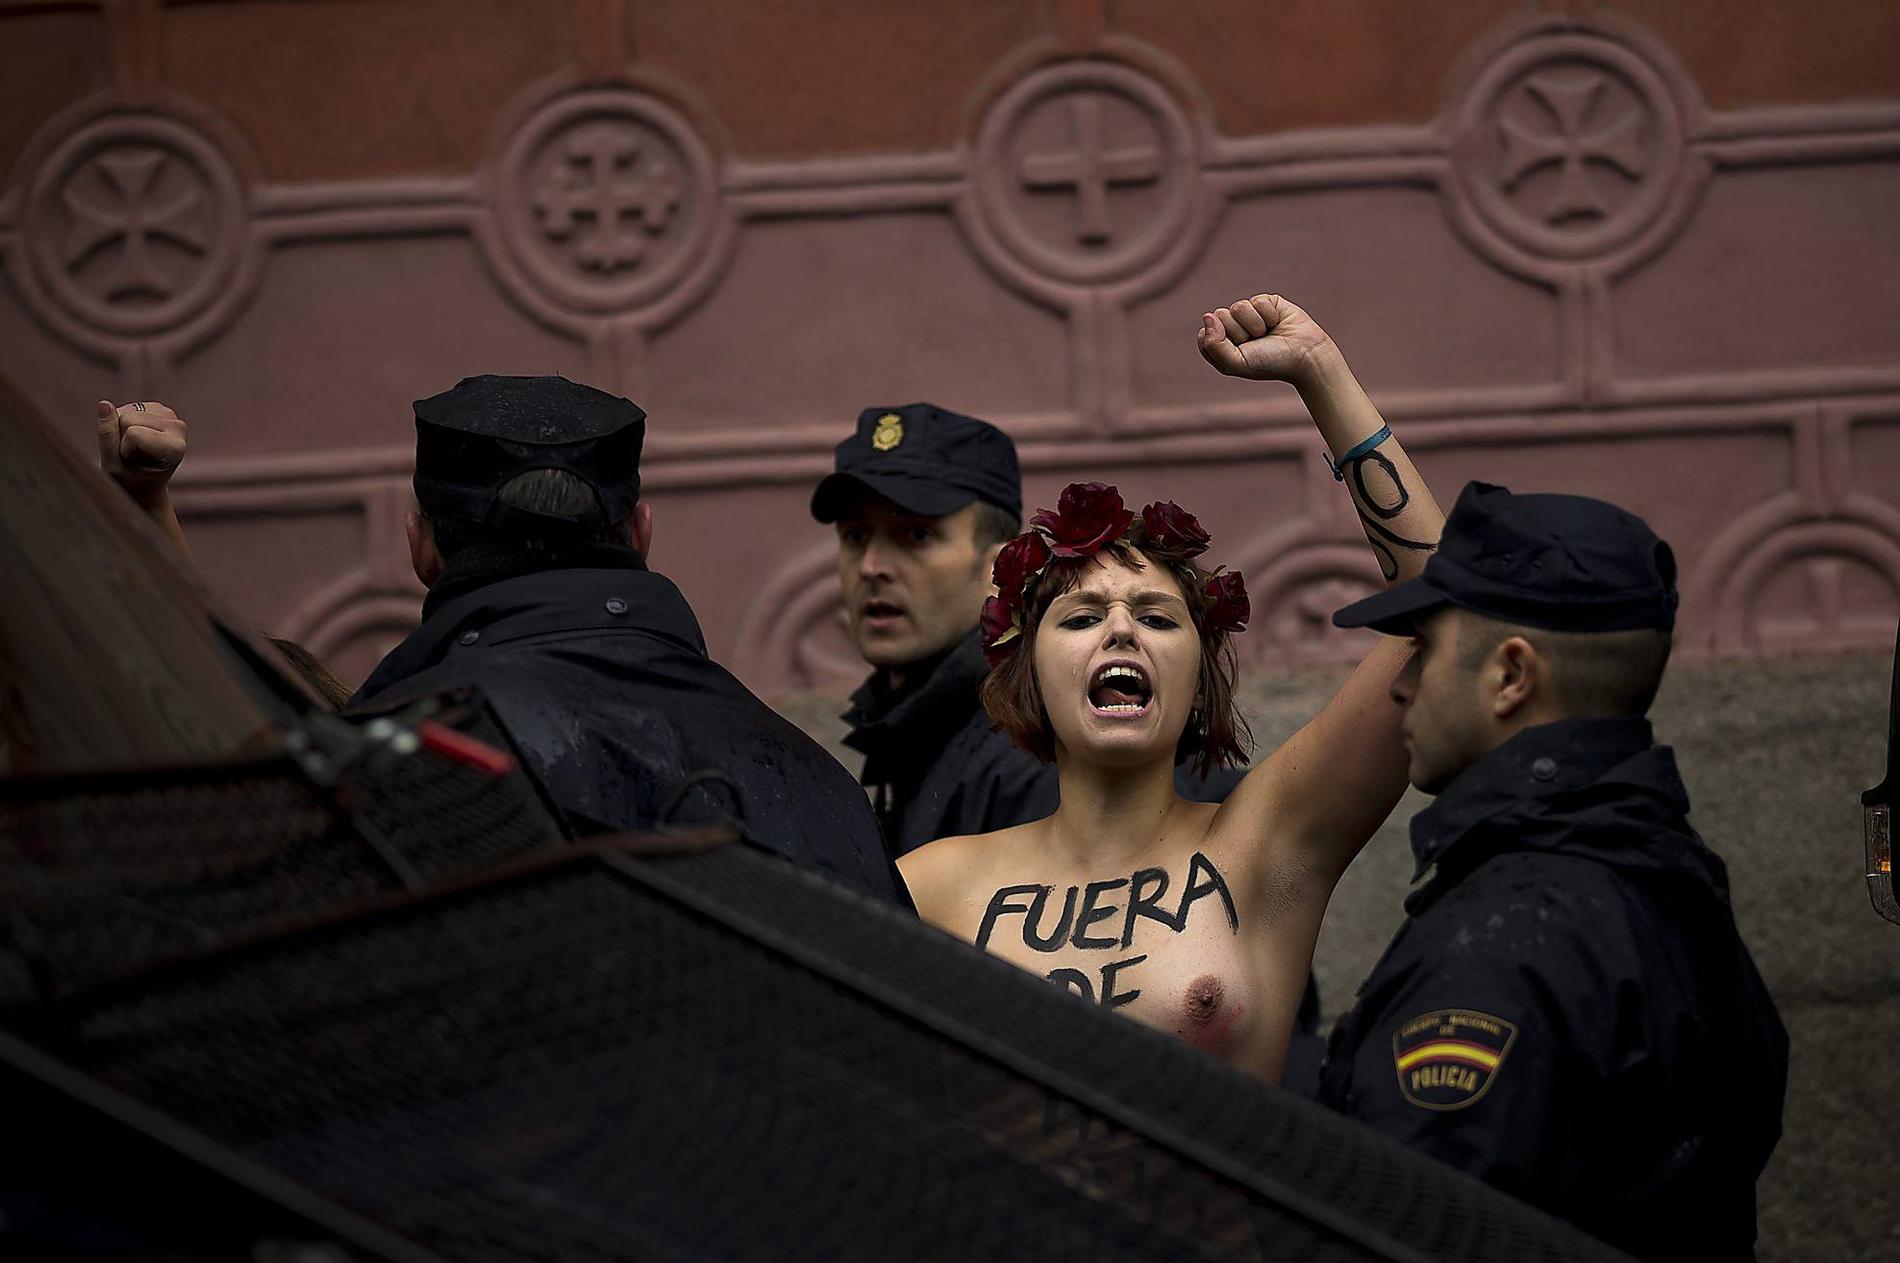 Medlemmar ur Femen protesterar mot förslaget om abortförbud i Spanien.